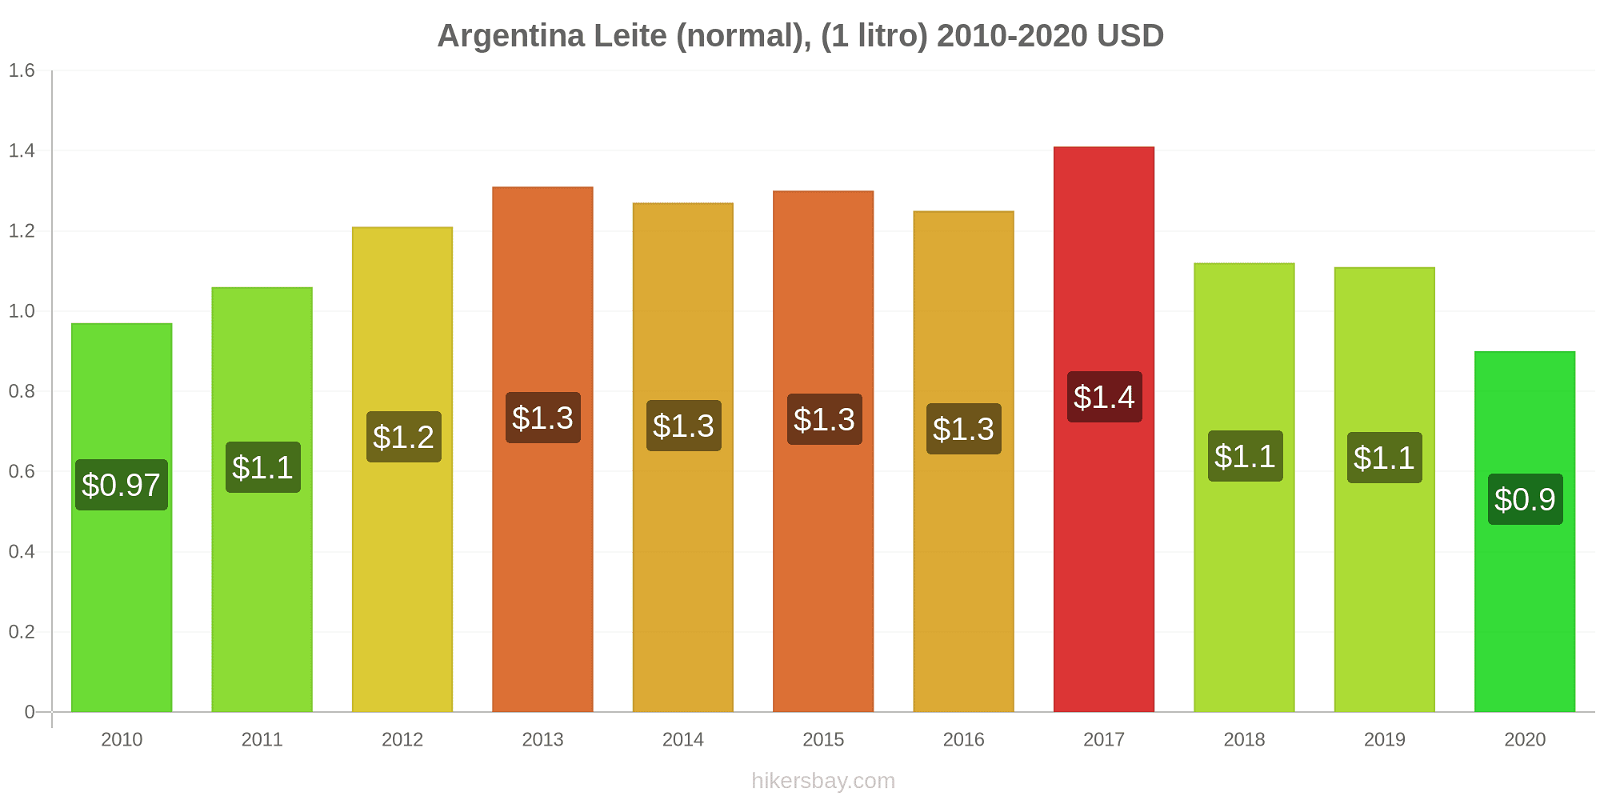 Argentina variação de preço (Regular), leite (1 litro) hikersbay.com